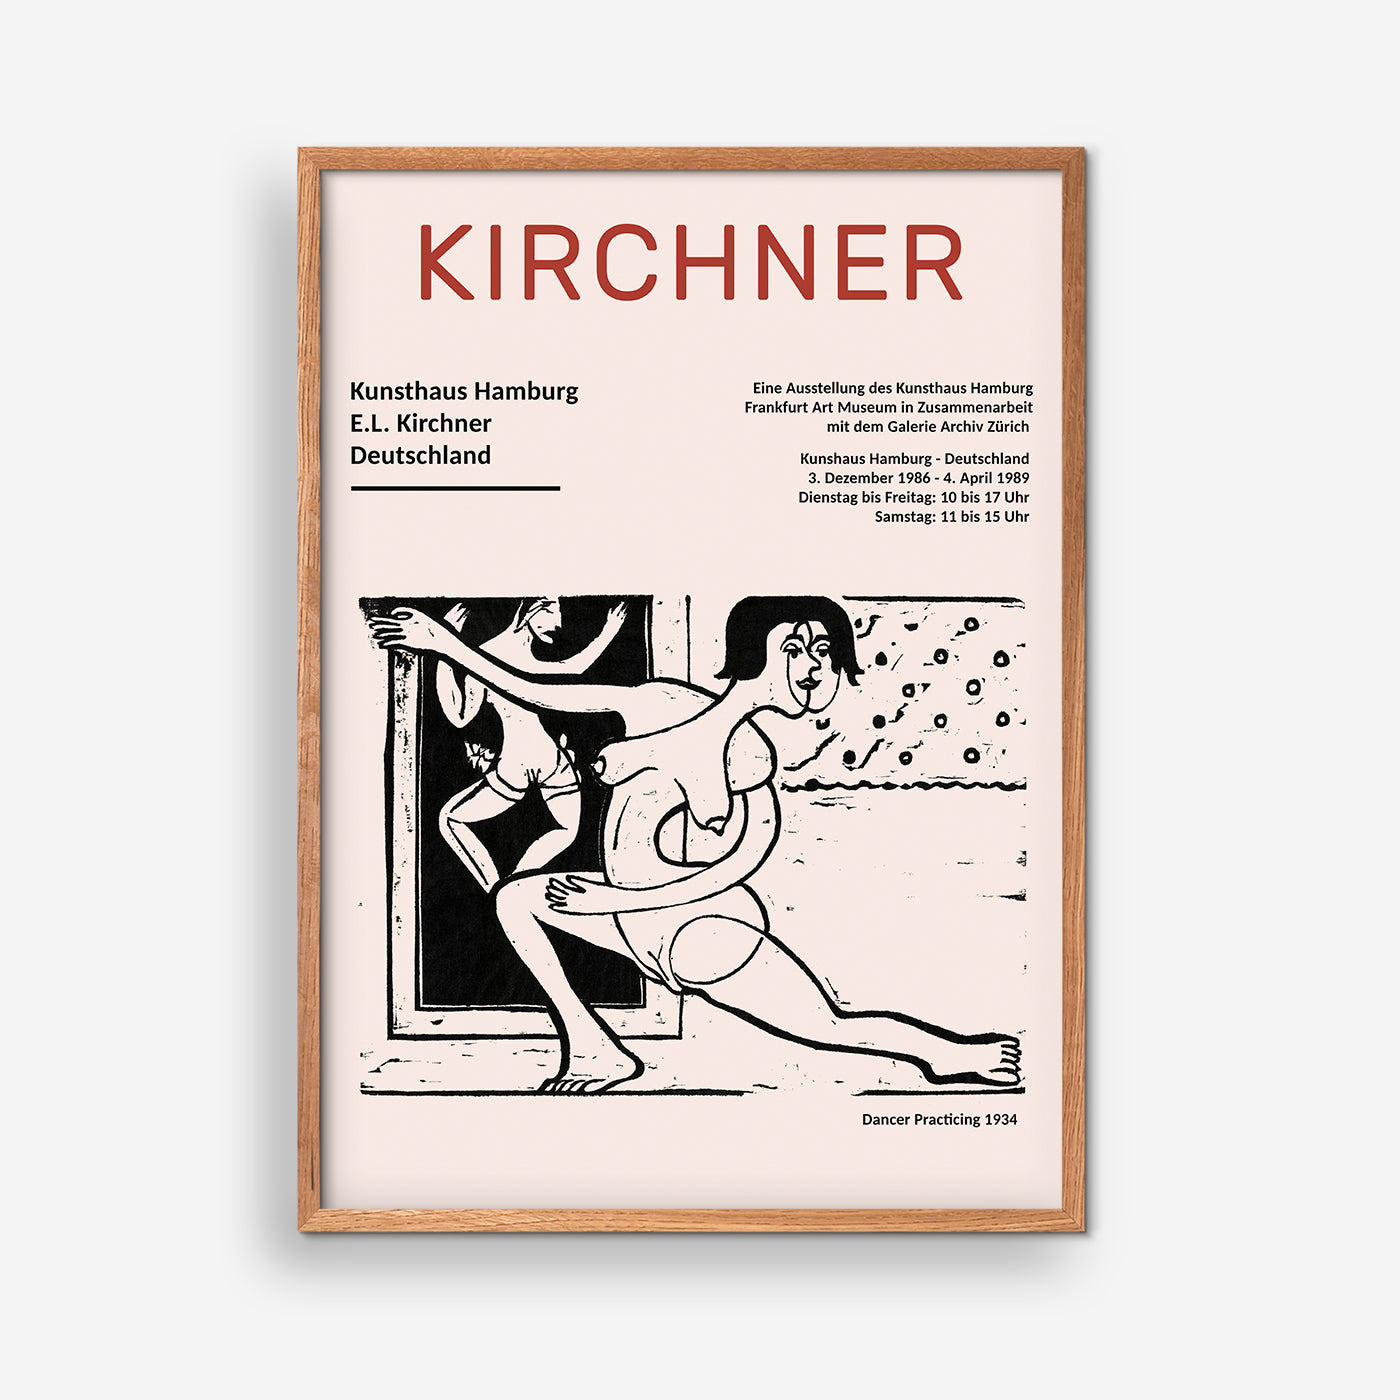 Tänzer beim Üben 1934 - Ernst Ludwig Kirchner